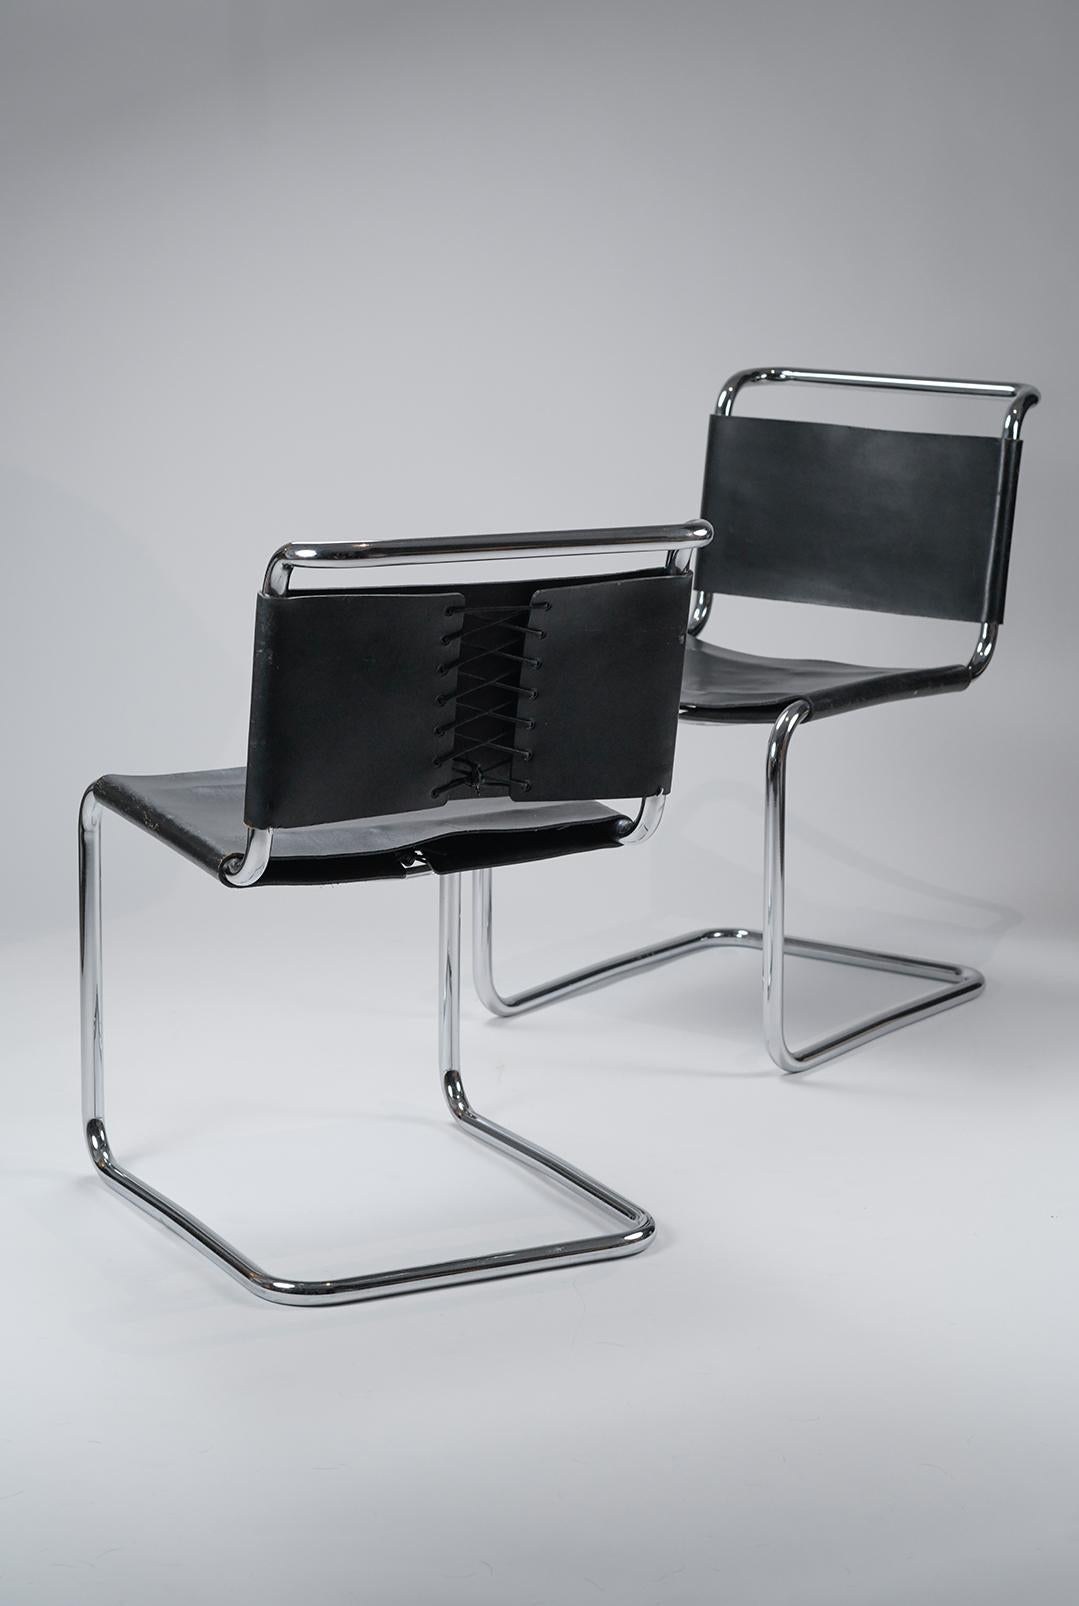 Die 1927 von Marcel Breuer entworfenen und von Knoll produzierten ikonischen B33-Stühle verfügen über einen freitragenden Stahlrohrrahmen und lederne Sitzflächen und Rückenlehnen im 